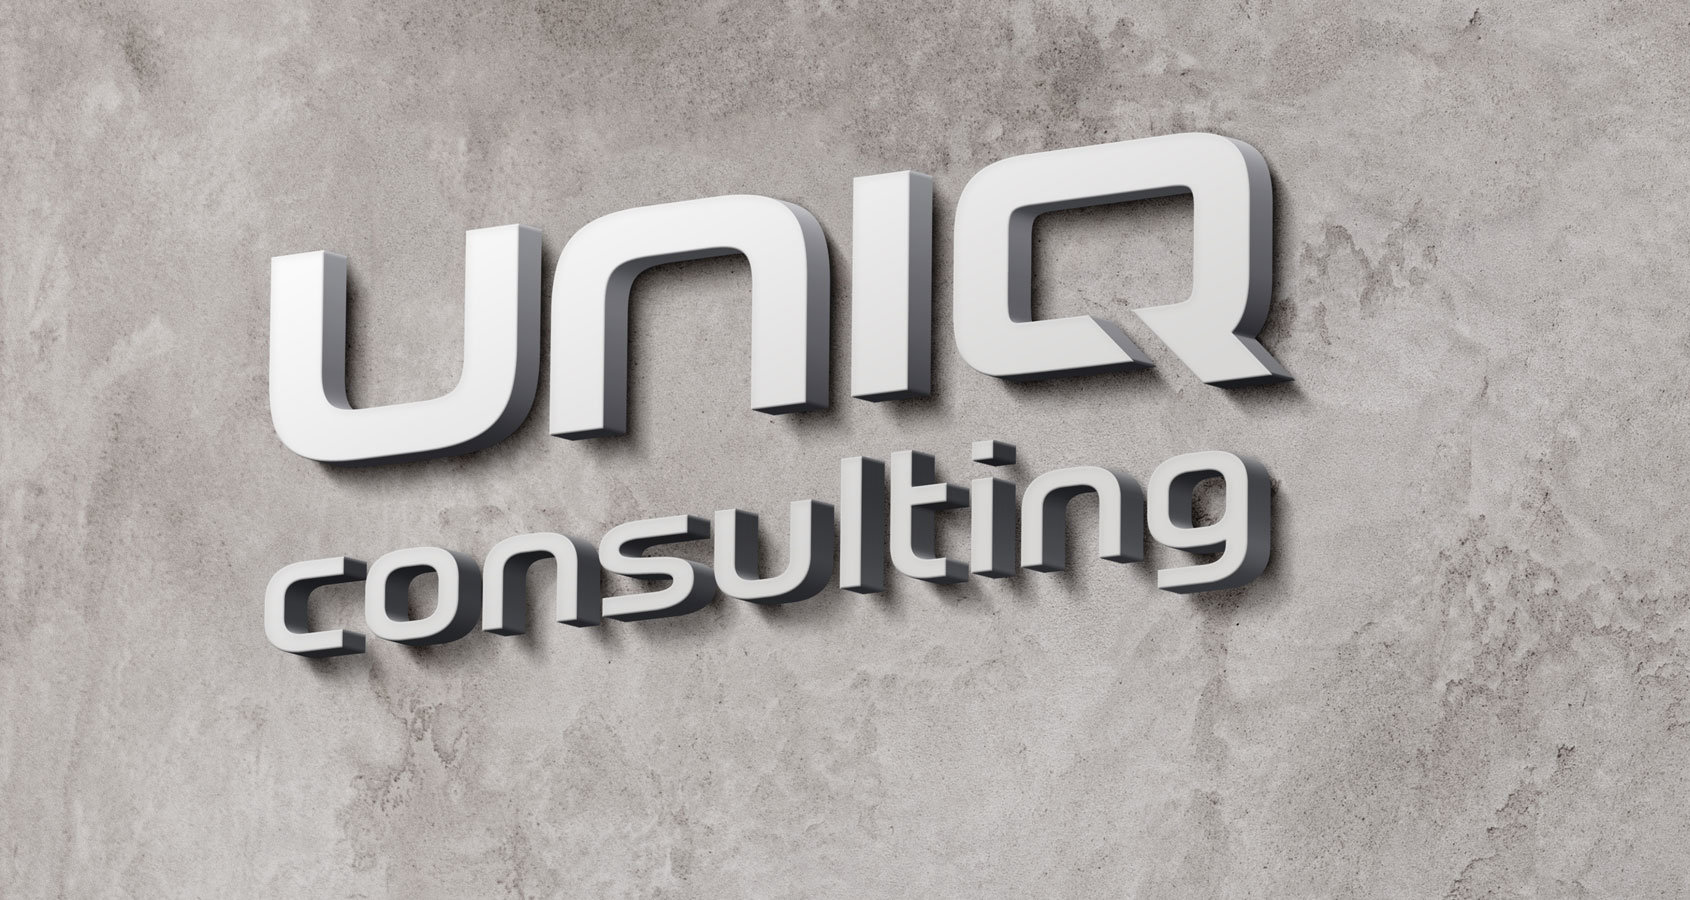 uniQconsulting: Neuer Auftritt, erweiterte Dienstleistungen